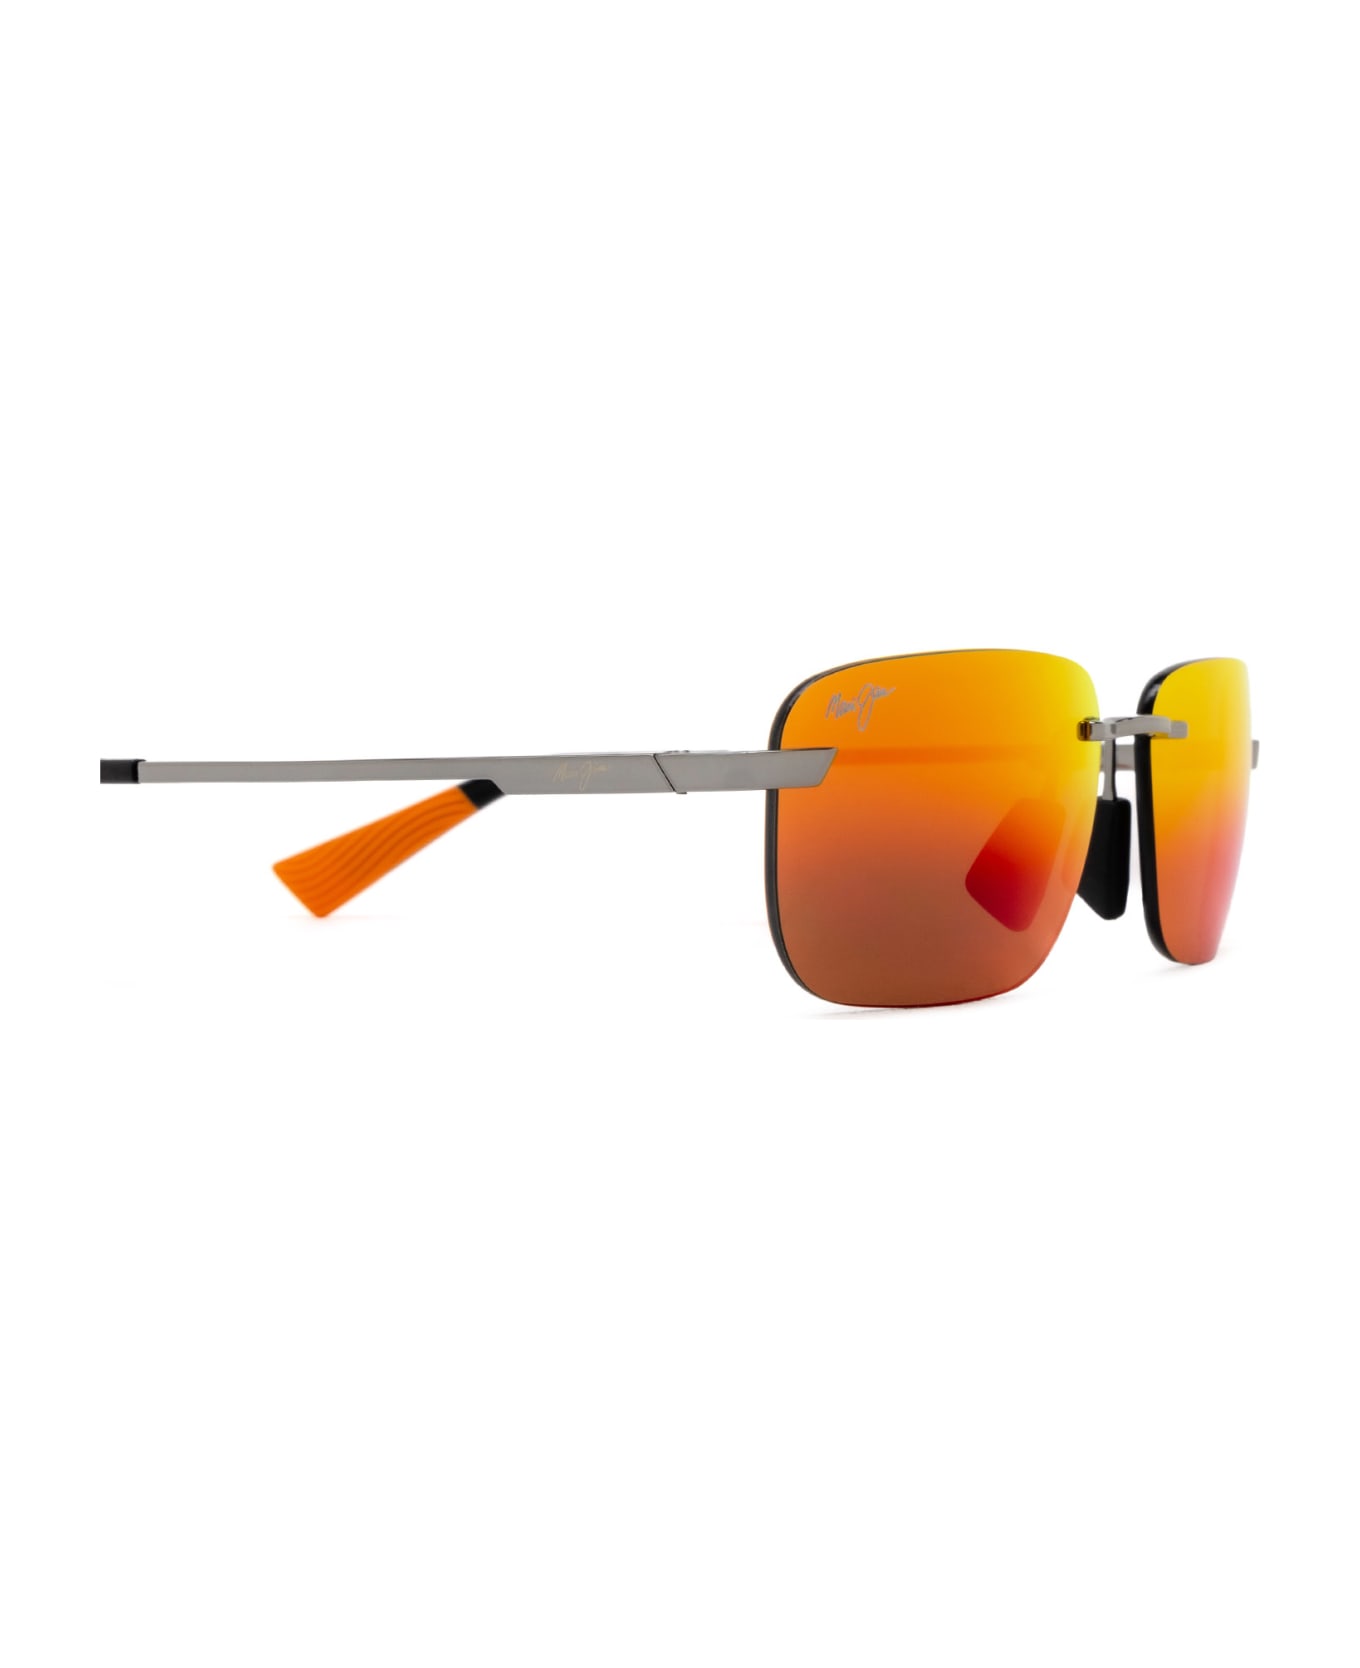 Maui Jim Mj624 Shiny Light Ruthenium Sunglasses - Shiny Light Ruthenium